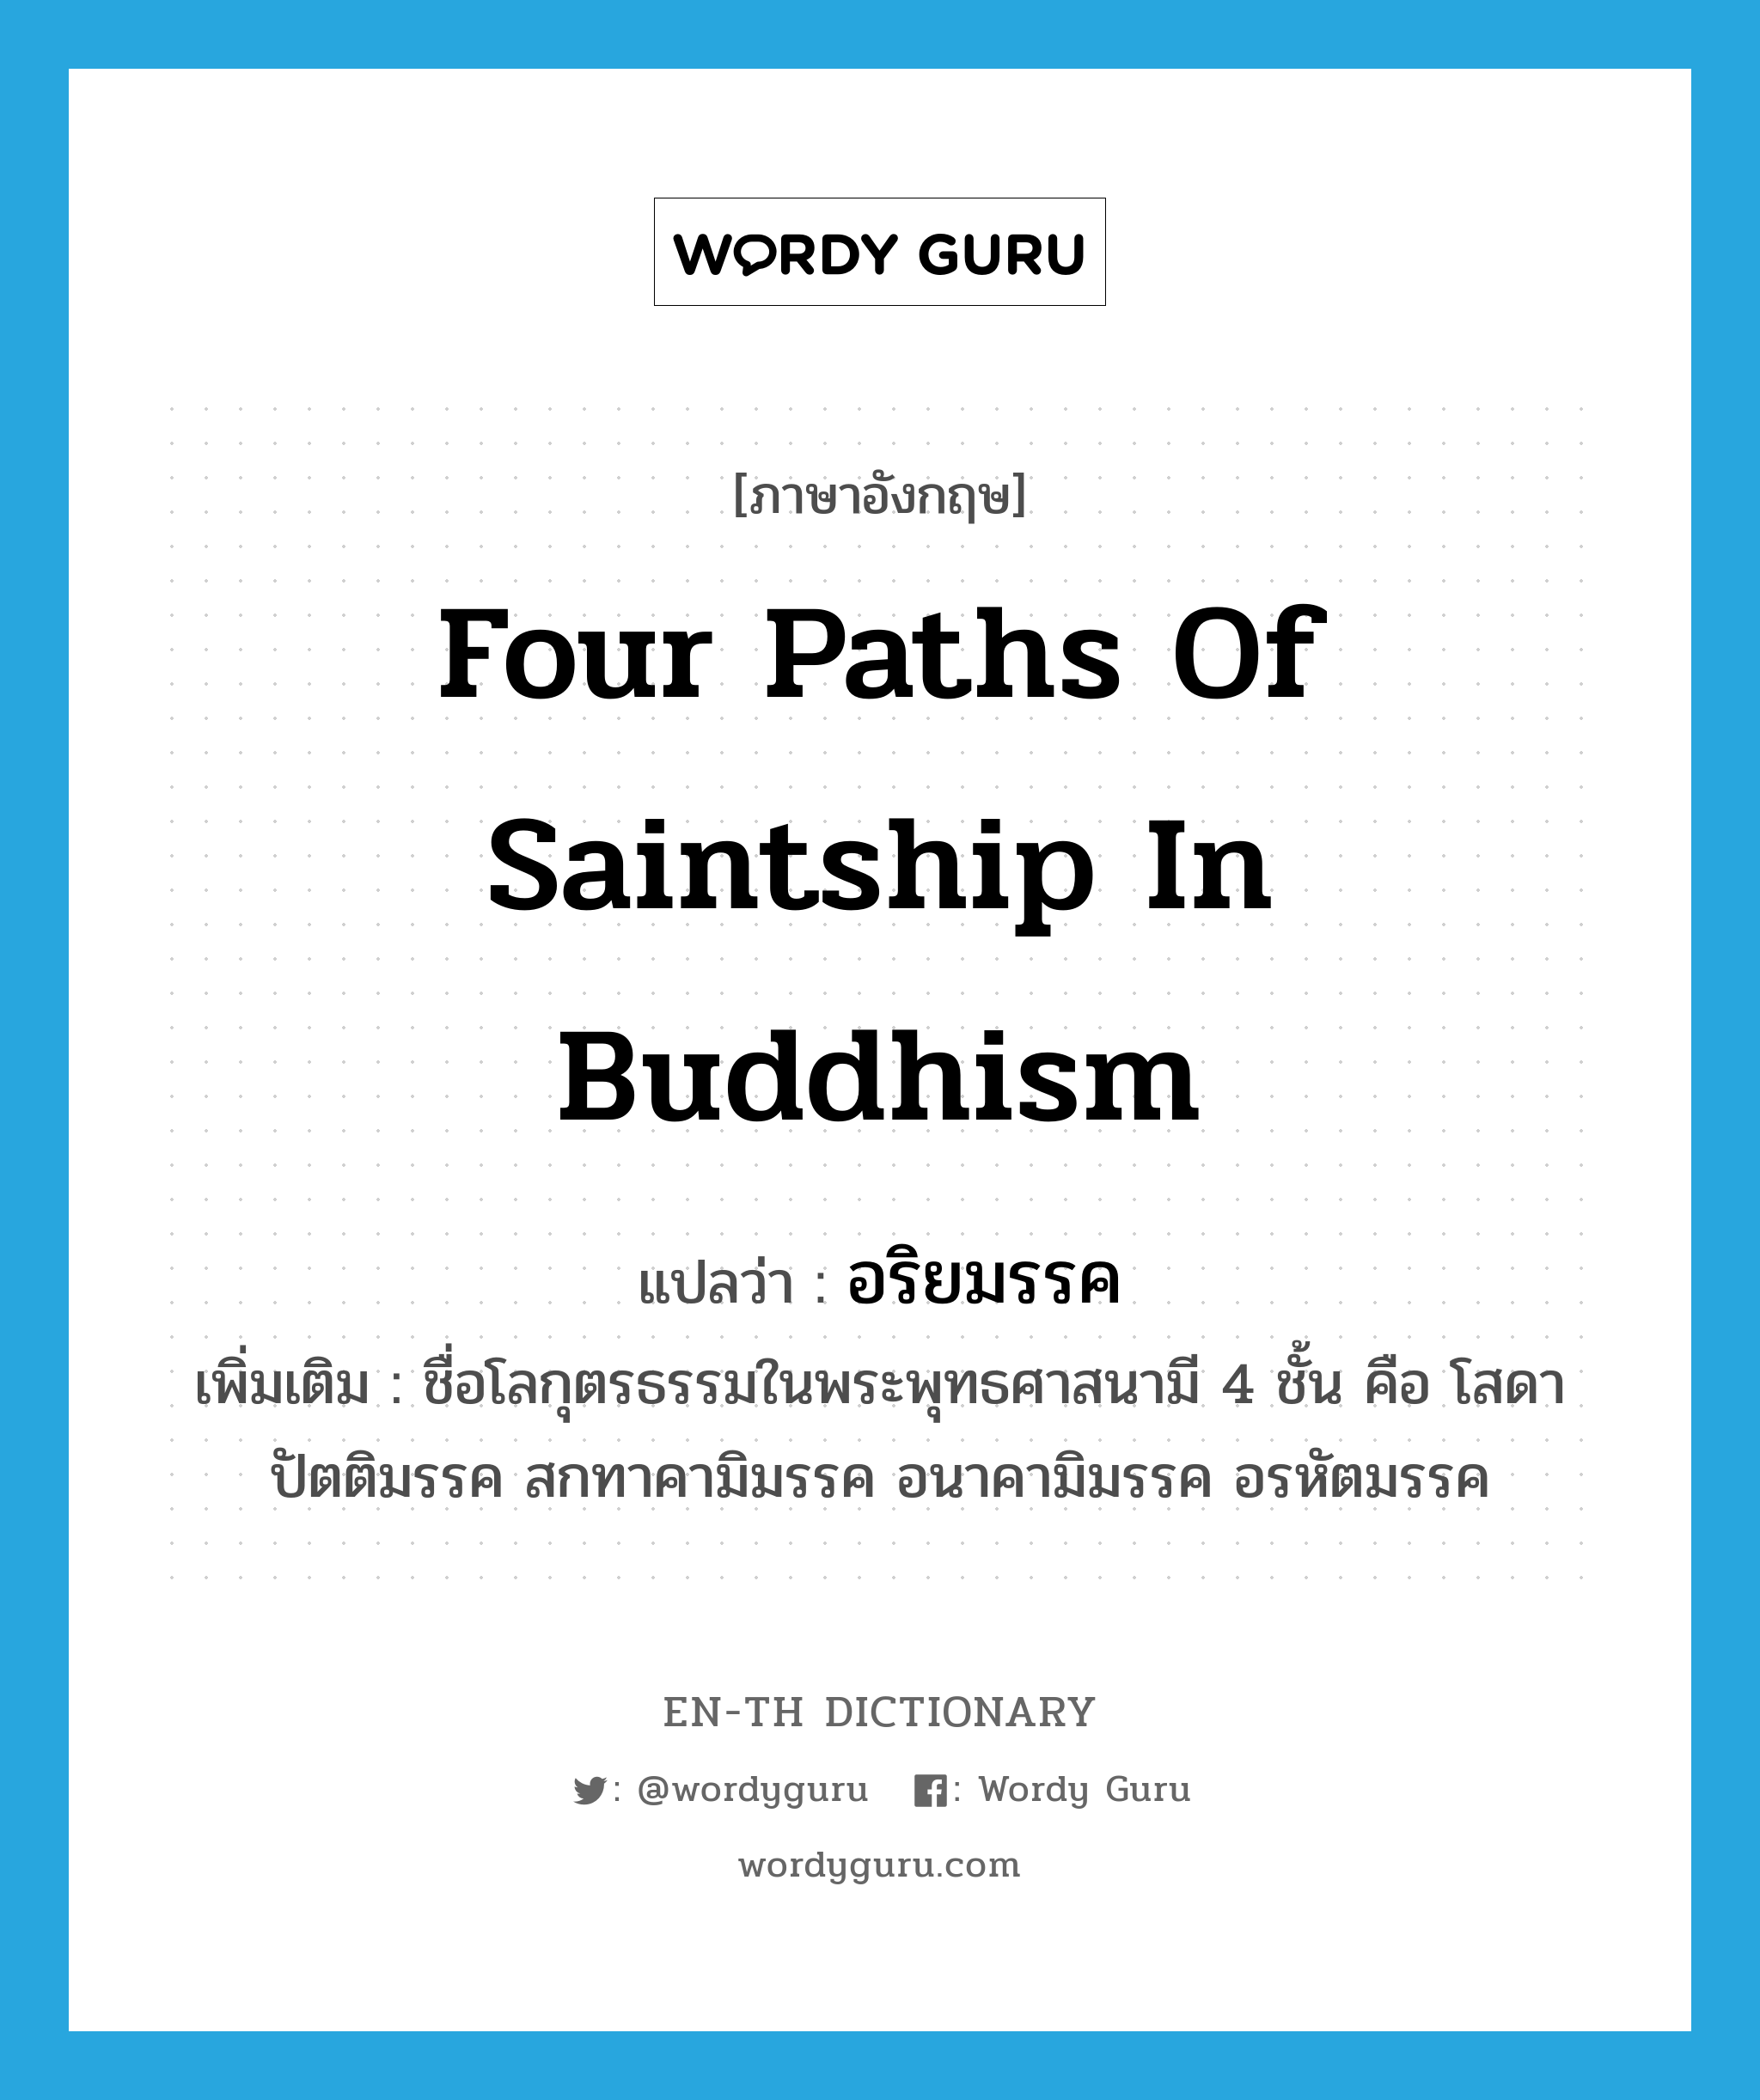 อริยมรรค ภาษาอังกฤษ?, คำศัพท์ภาษาอังกฤษ อริยมรรค แปลว่า four paths of saintship in Buddhism ประเภท N เพิ่มเติม ชื่อโลกุตรธรรมในพระพุทธศาสนามี 4 ชั้น คือ โสดาปัตติมรรค สกทาคามิมรรค อนาคามิมรรค อรหัตมรรค หมวด N